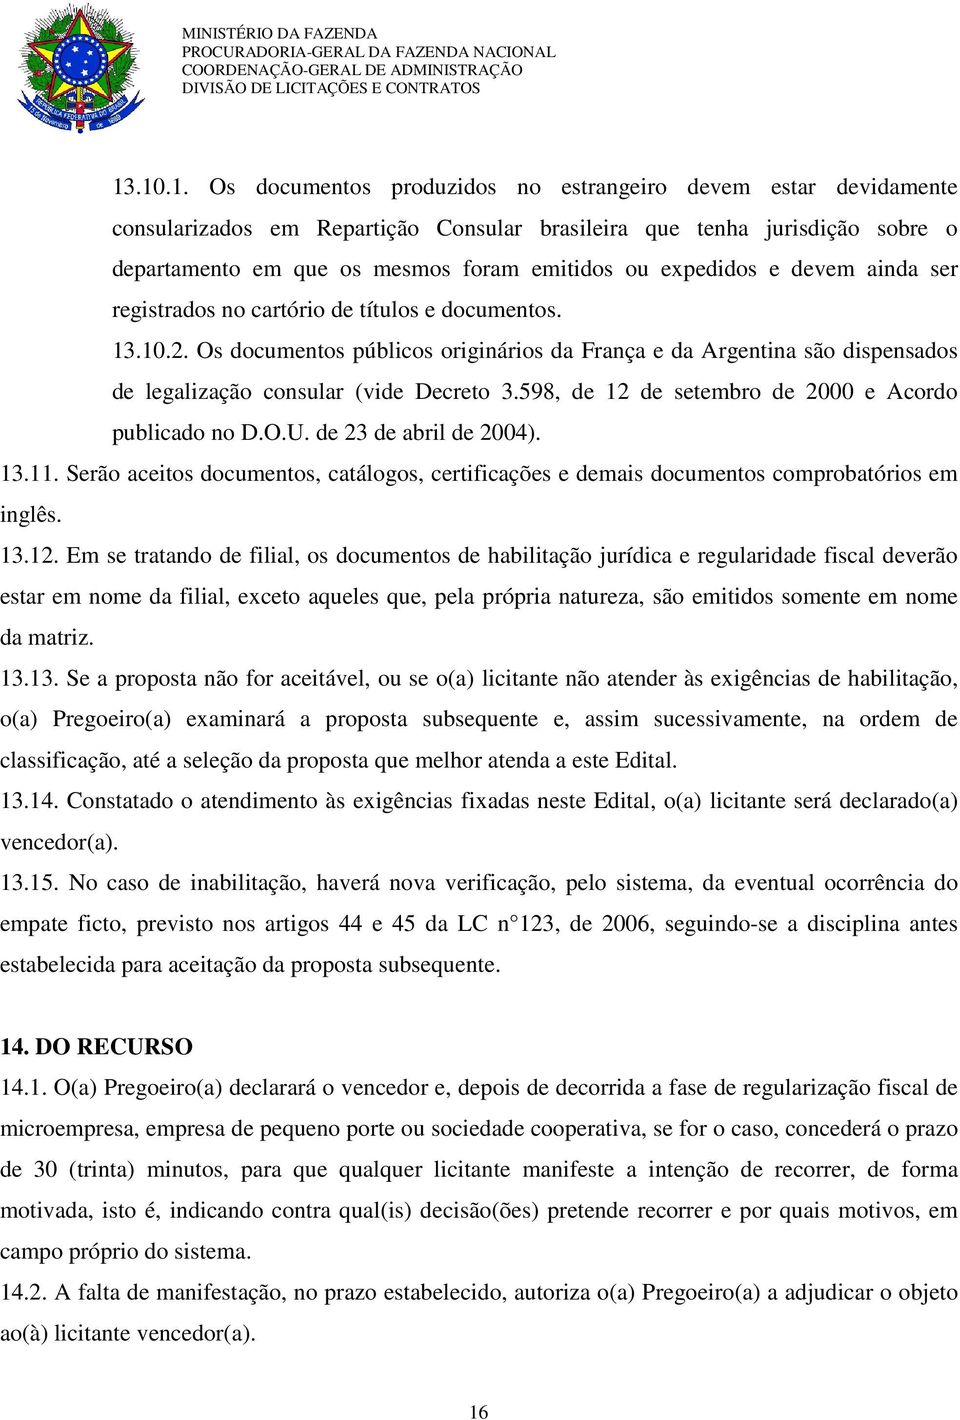 Os documentos públicos originários da França e da Argentina são dispensados de legalização consular (vide Decreto 3.598, de 12 de setembro de 2000 e Acordo publicado no D.O.U. de 23 de abril de 2004).